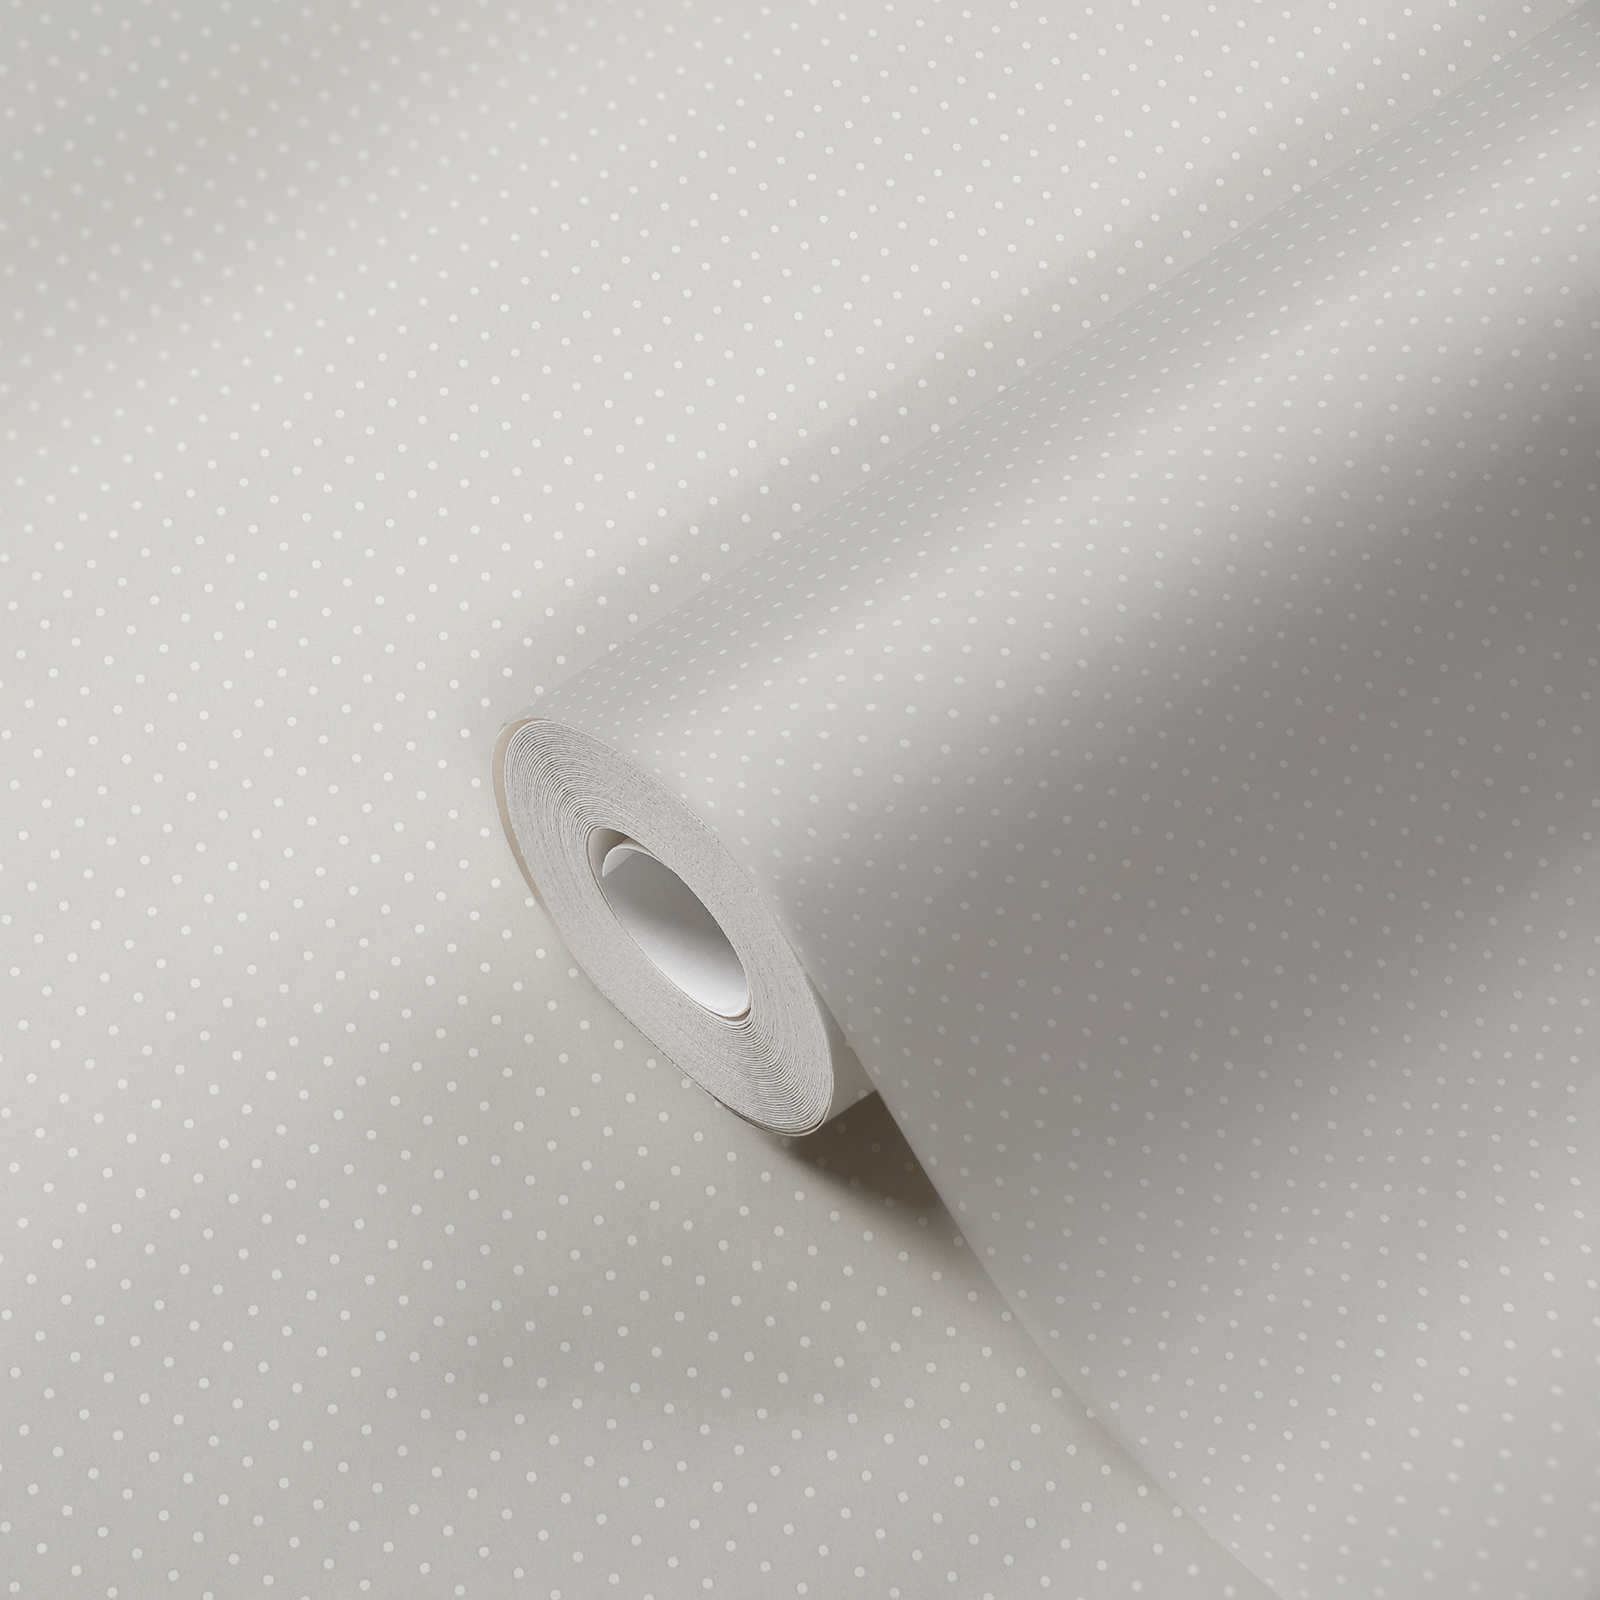             Carta da parati in tessuto non tessuto con motivo a piccoli punti - grigio, bianco
        